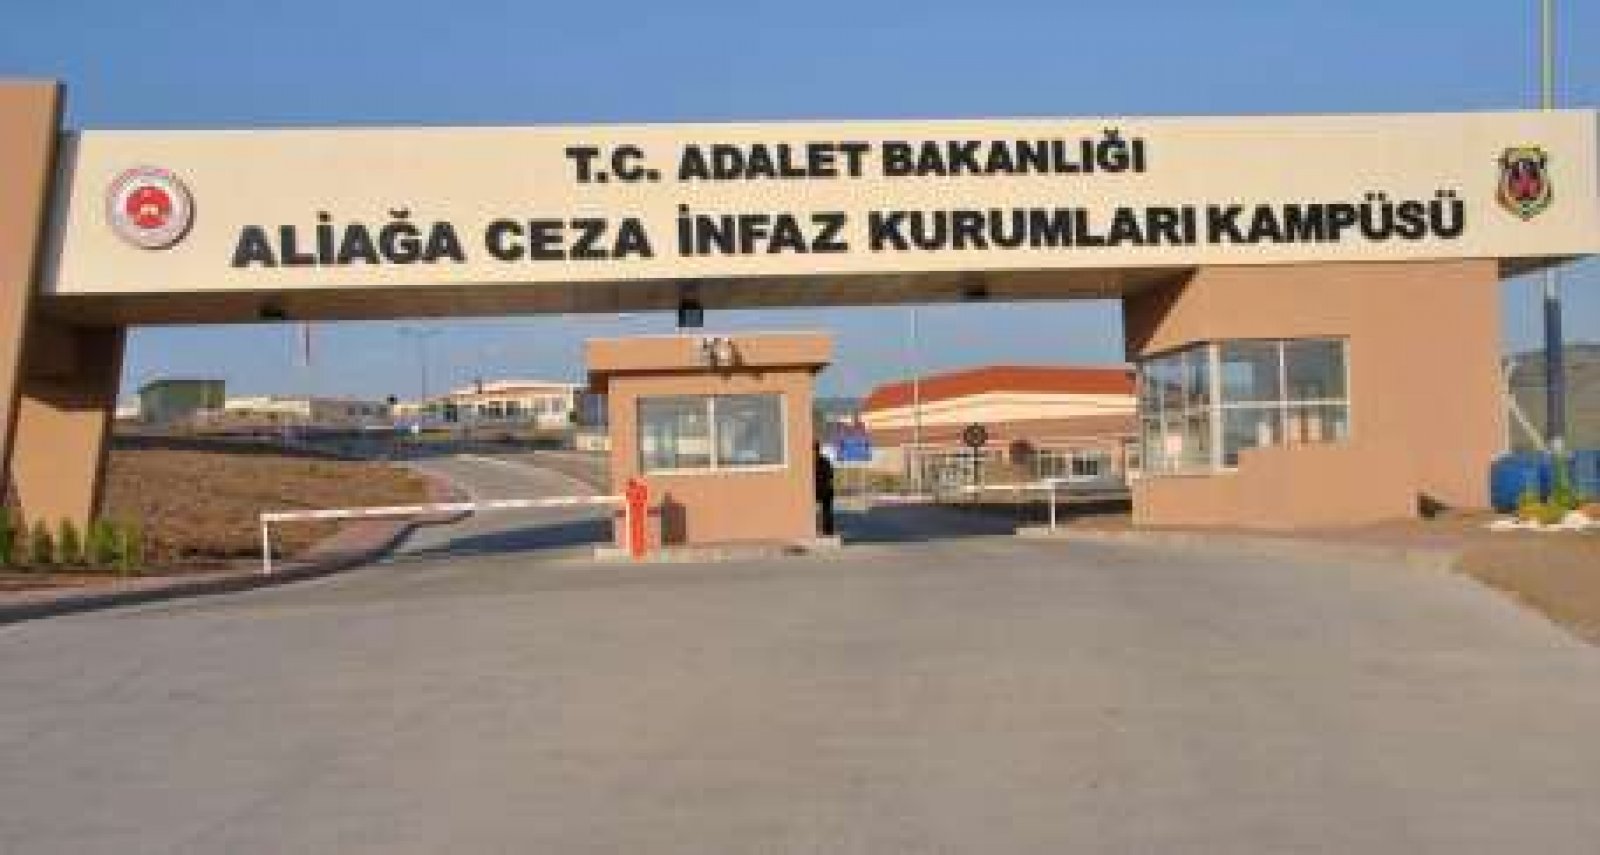 Izmir Aliaga Prison